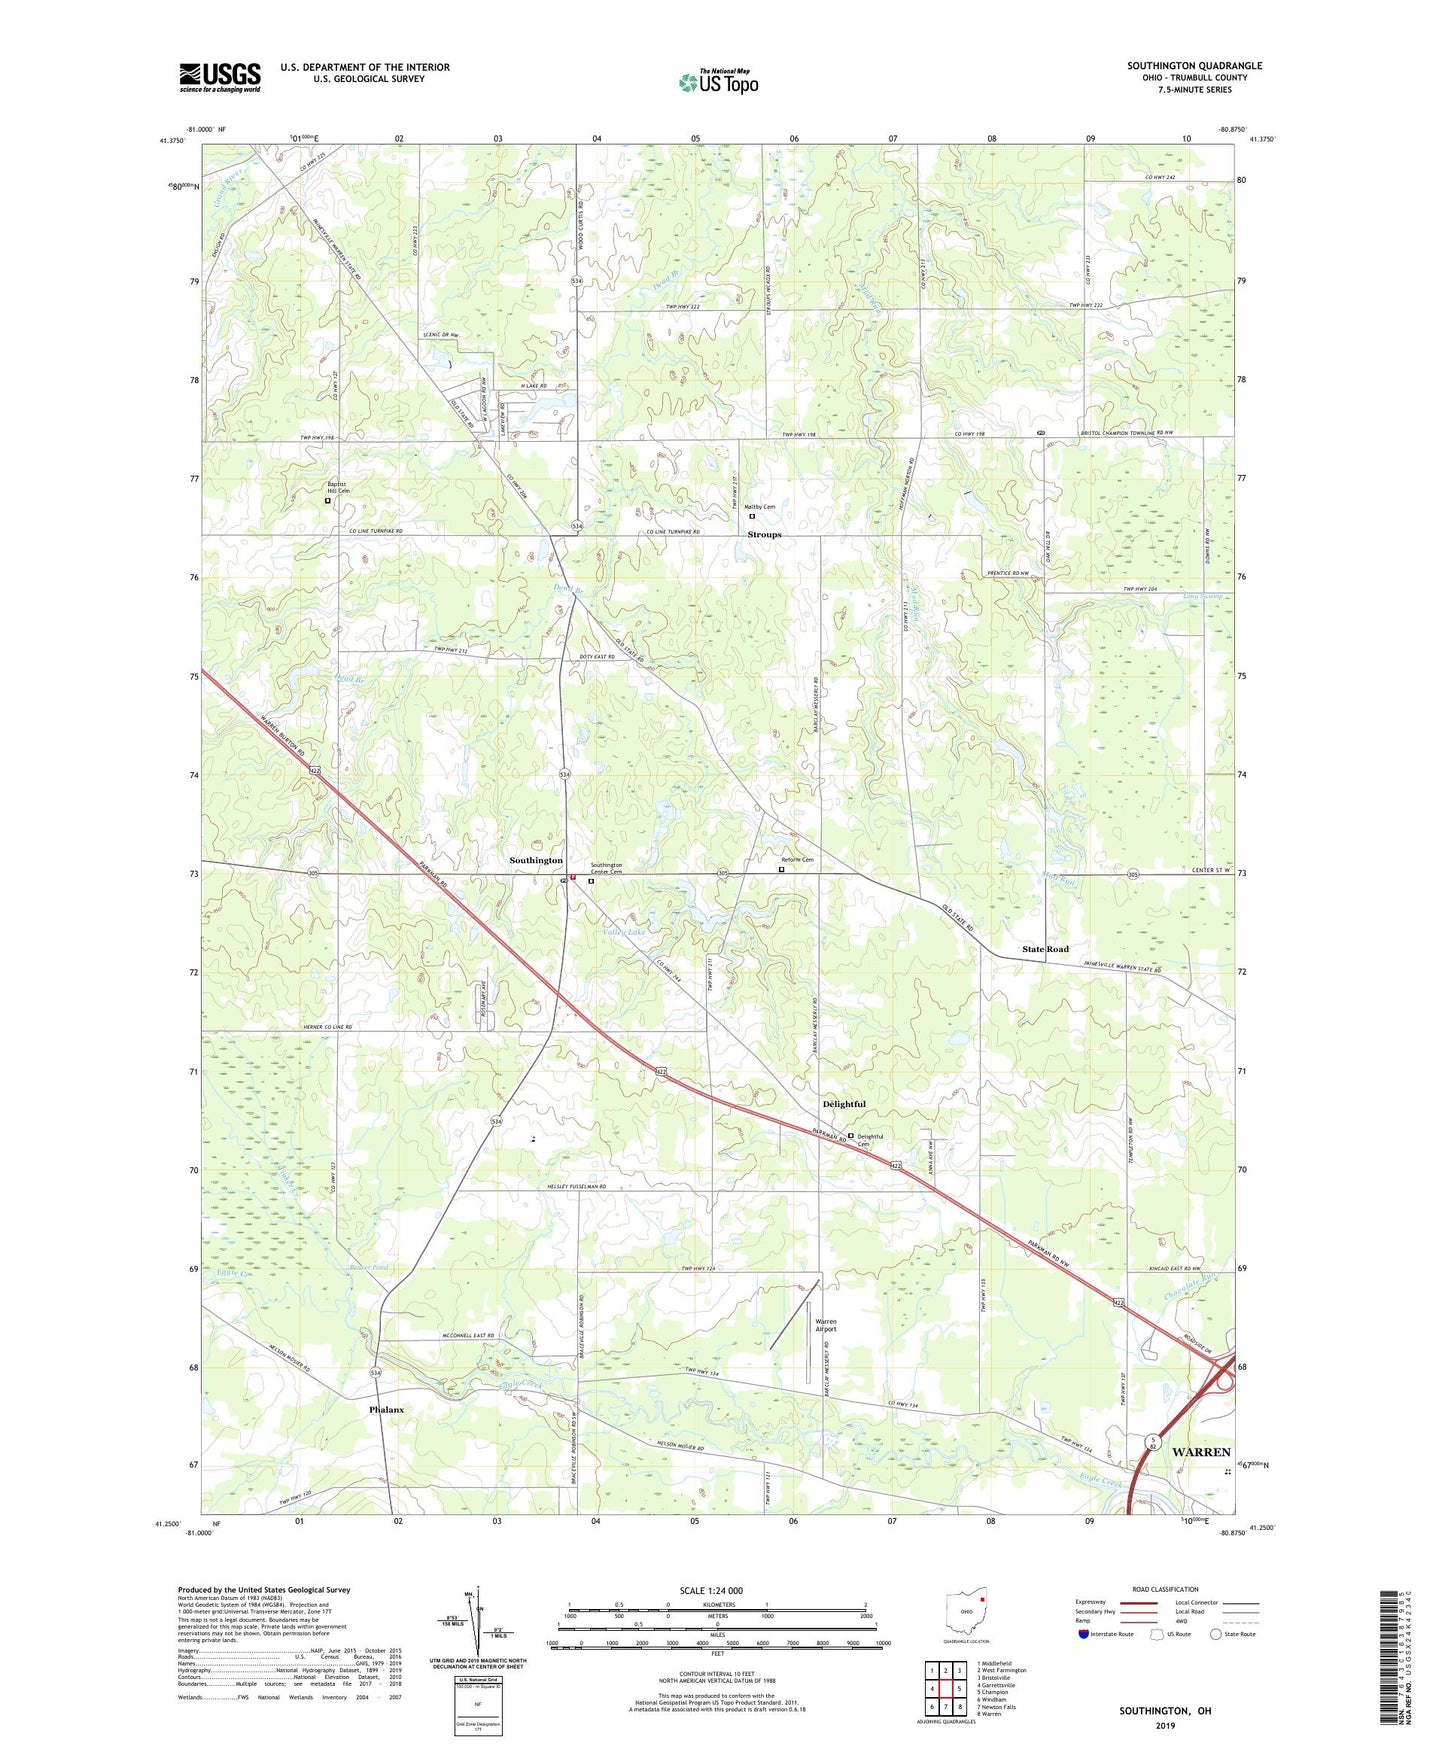 Southington Ohio US Topo Map Image